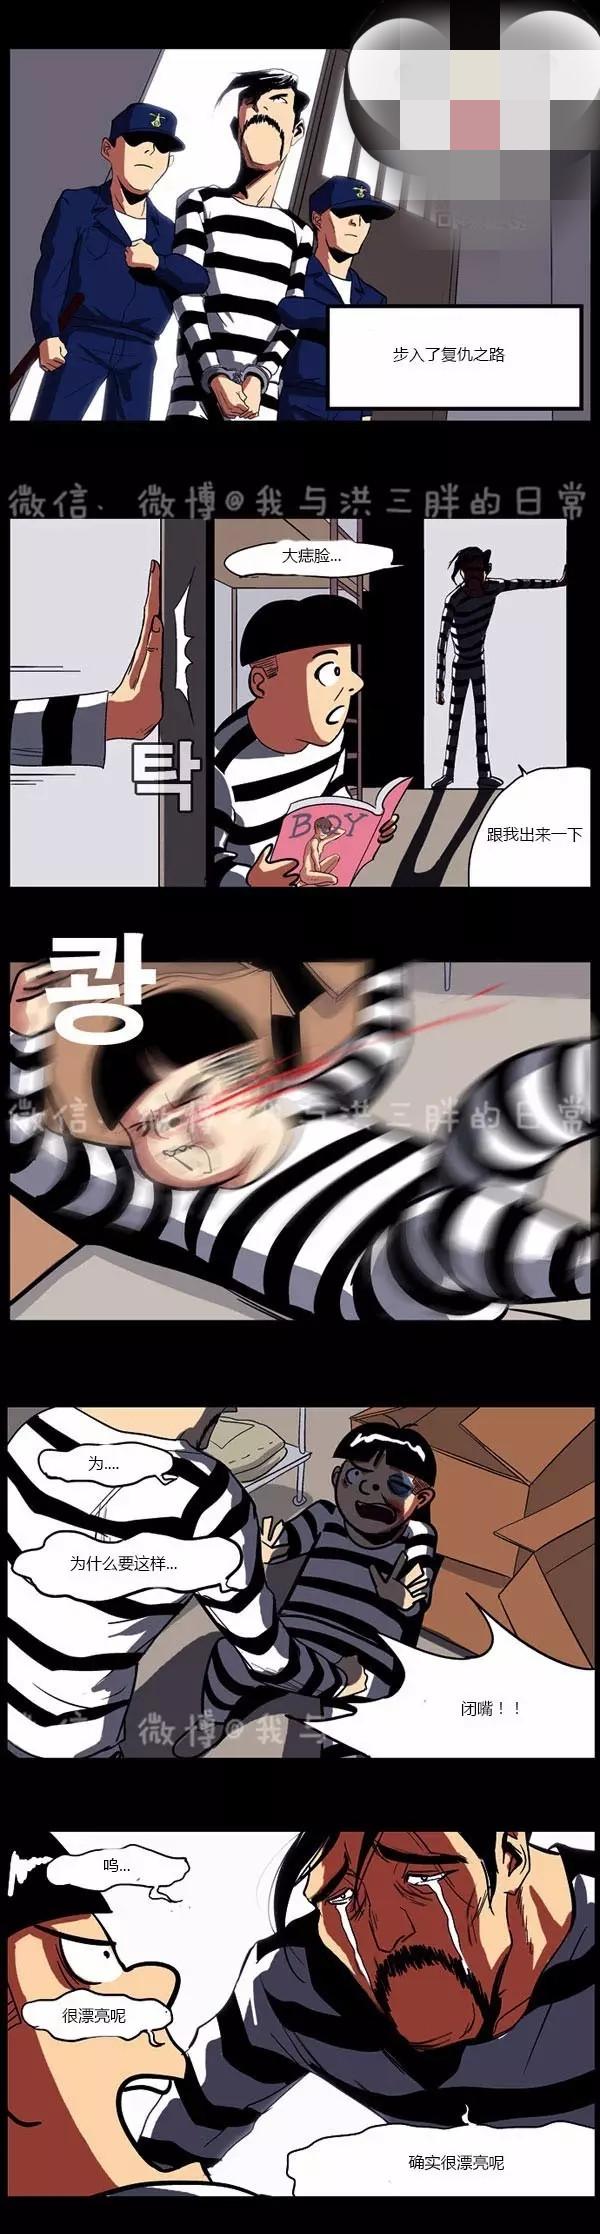 韩国搞笑漫画《狱友的爱》那是禁止的爱